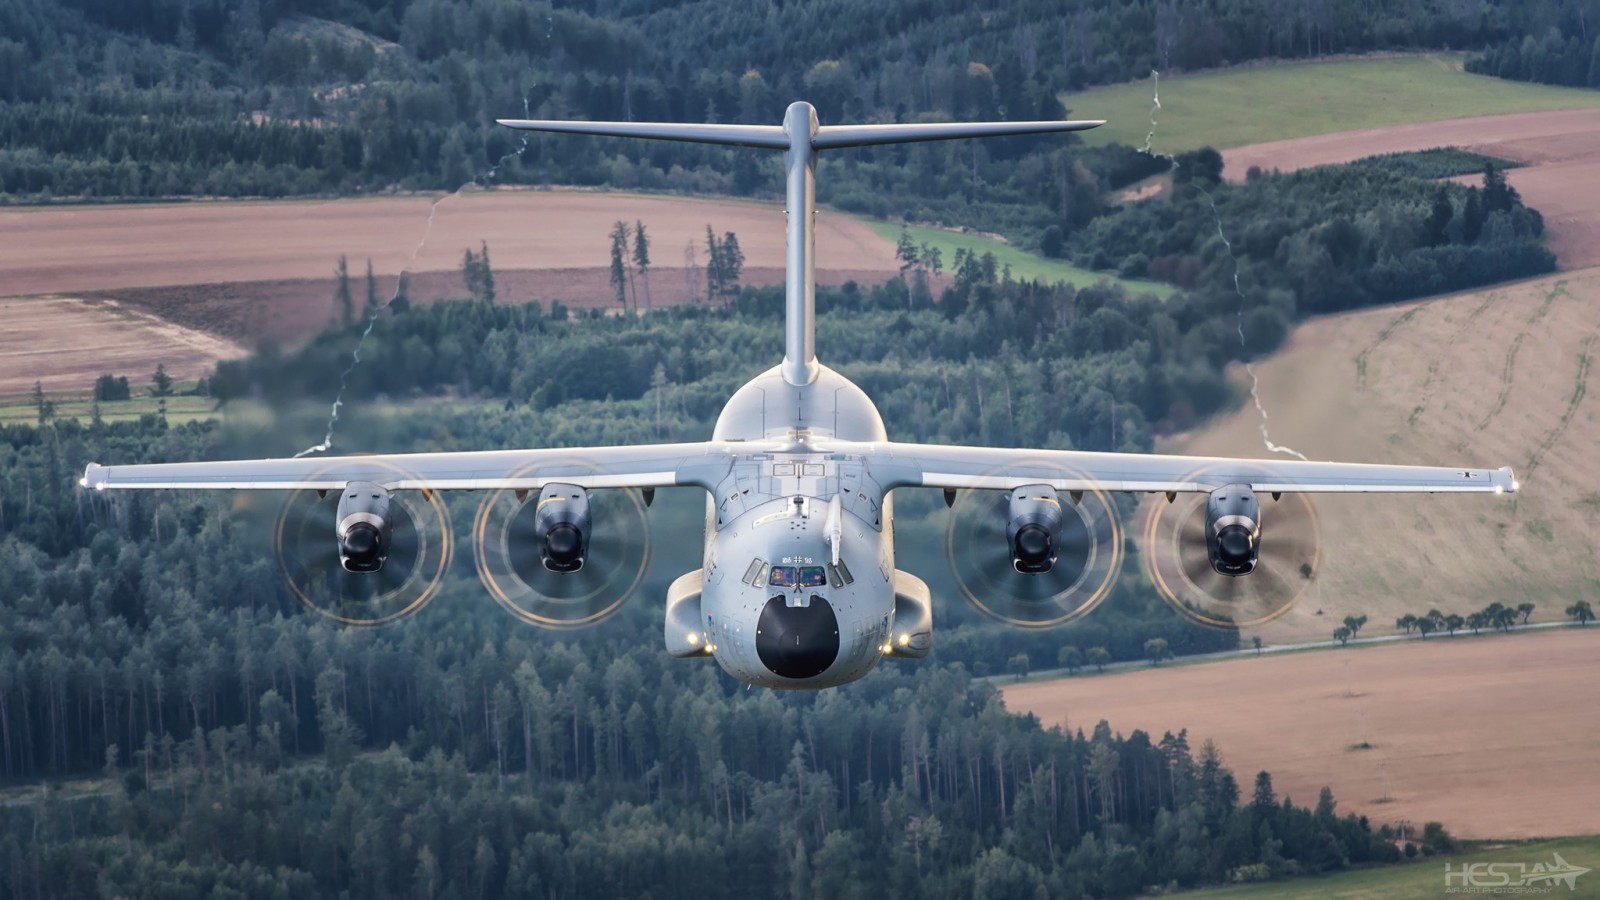 森林, ドイツ空軍, HESJAエアアート写真, A400М, エアバス軍